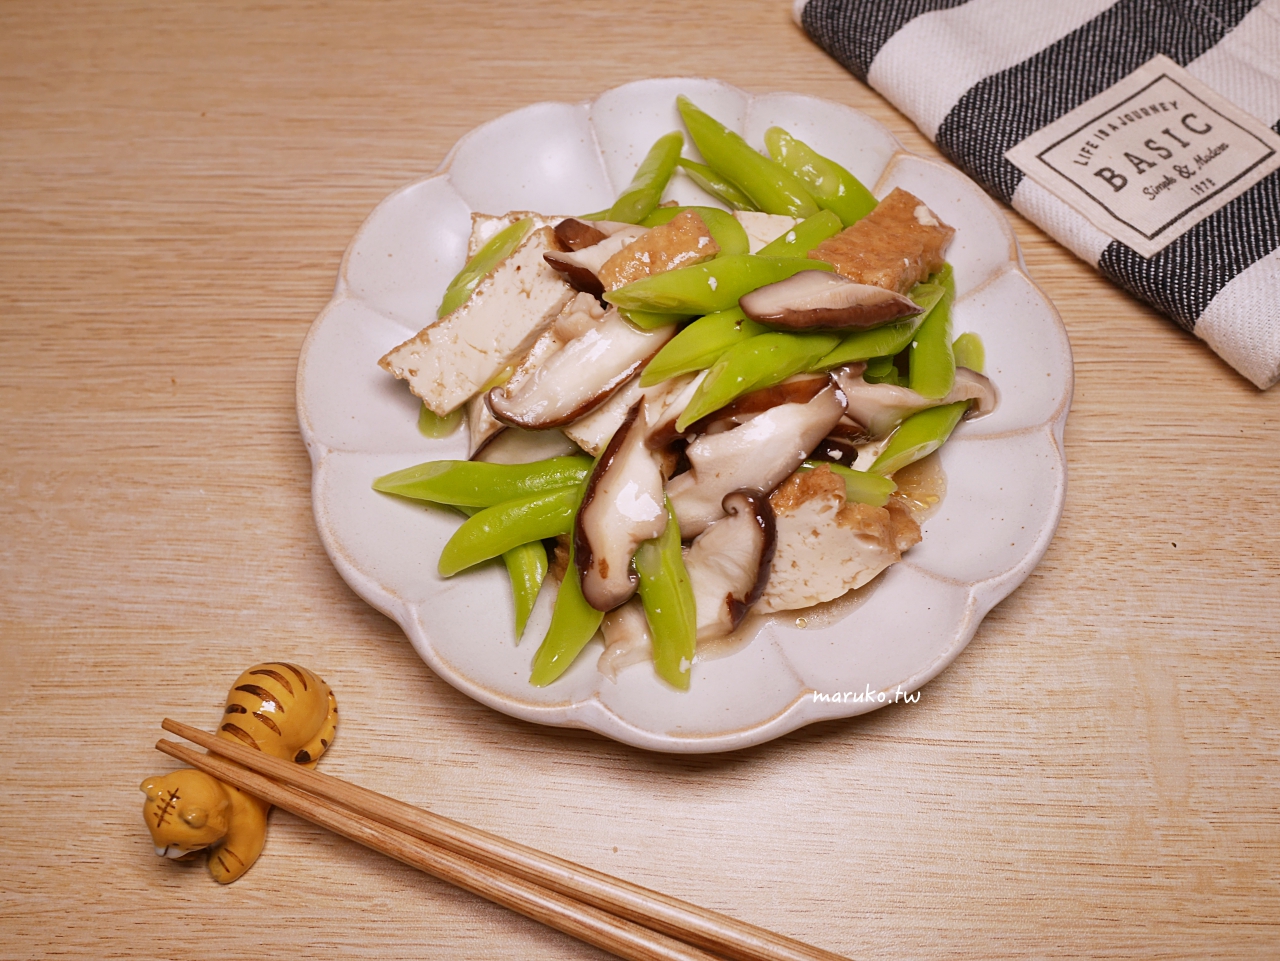 【食譜】油豆腐拌時蔬 5分鐘開飯 只要煮熟就能上桌 中華黃金豆腐推薦